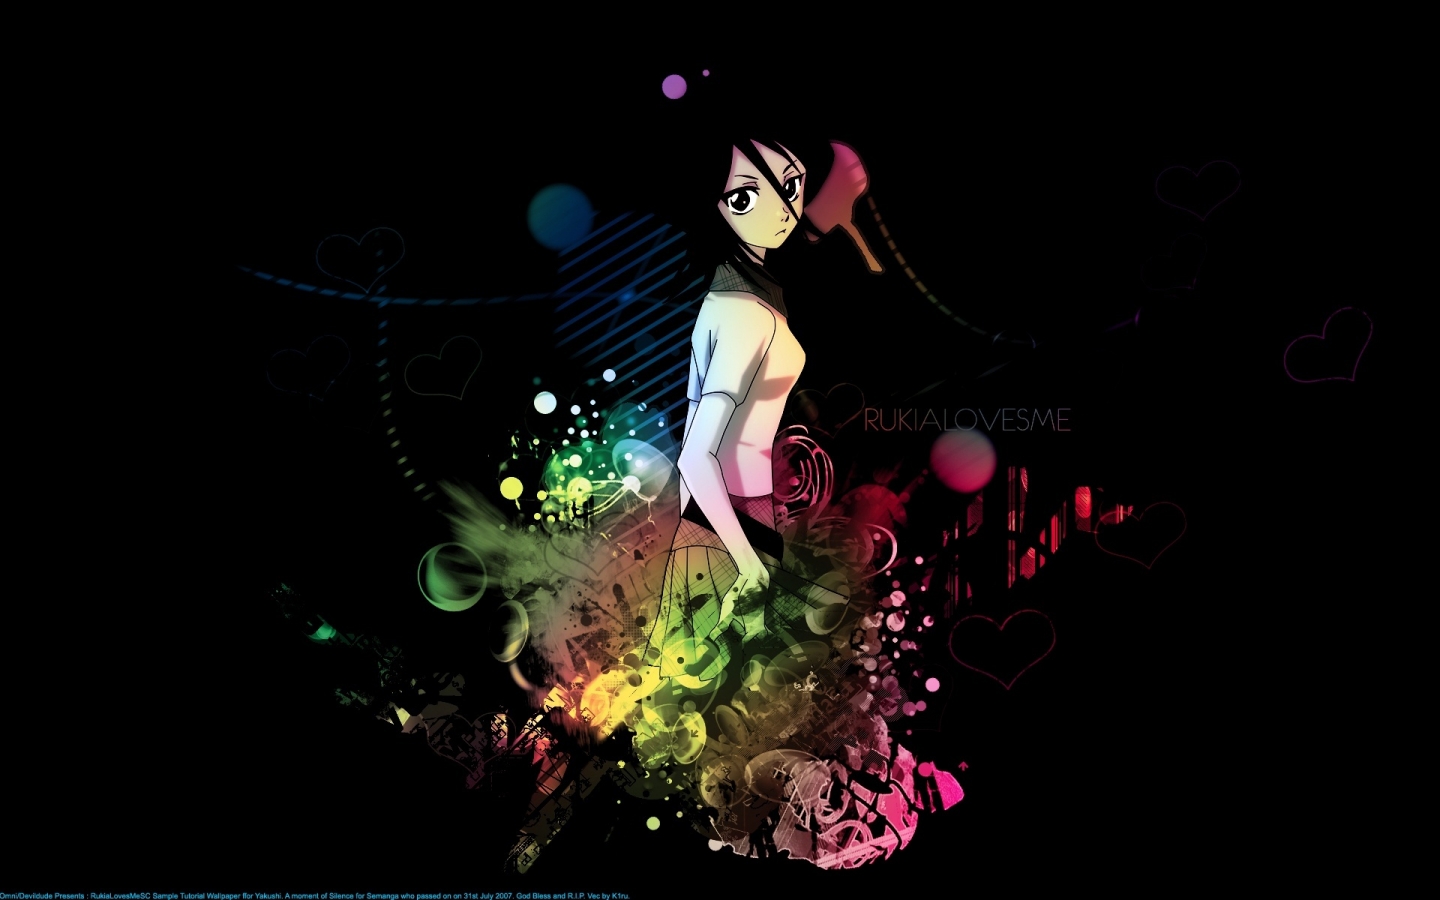 Bleach Rukia for 1440 x 900 widescreen resolution